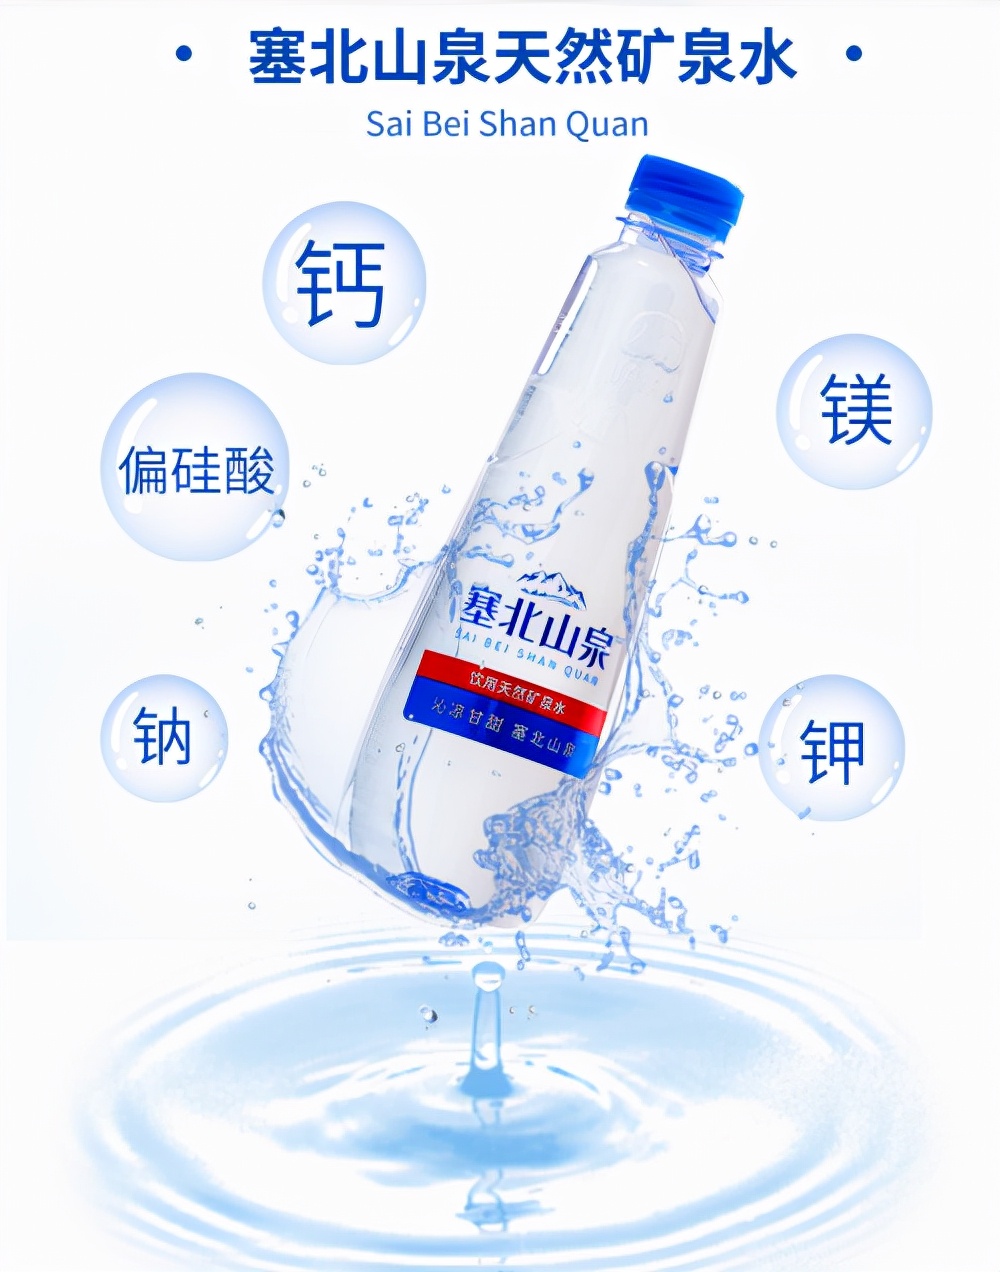 大窑塞北山泉：激起传统瓶装水赛道的涟漪